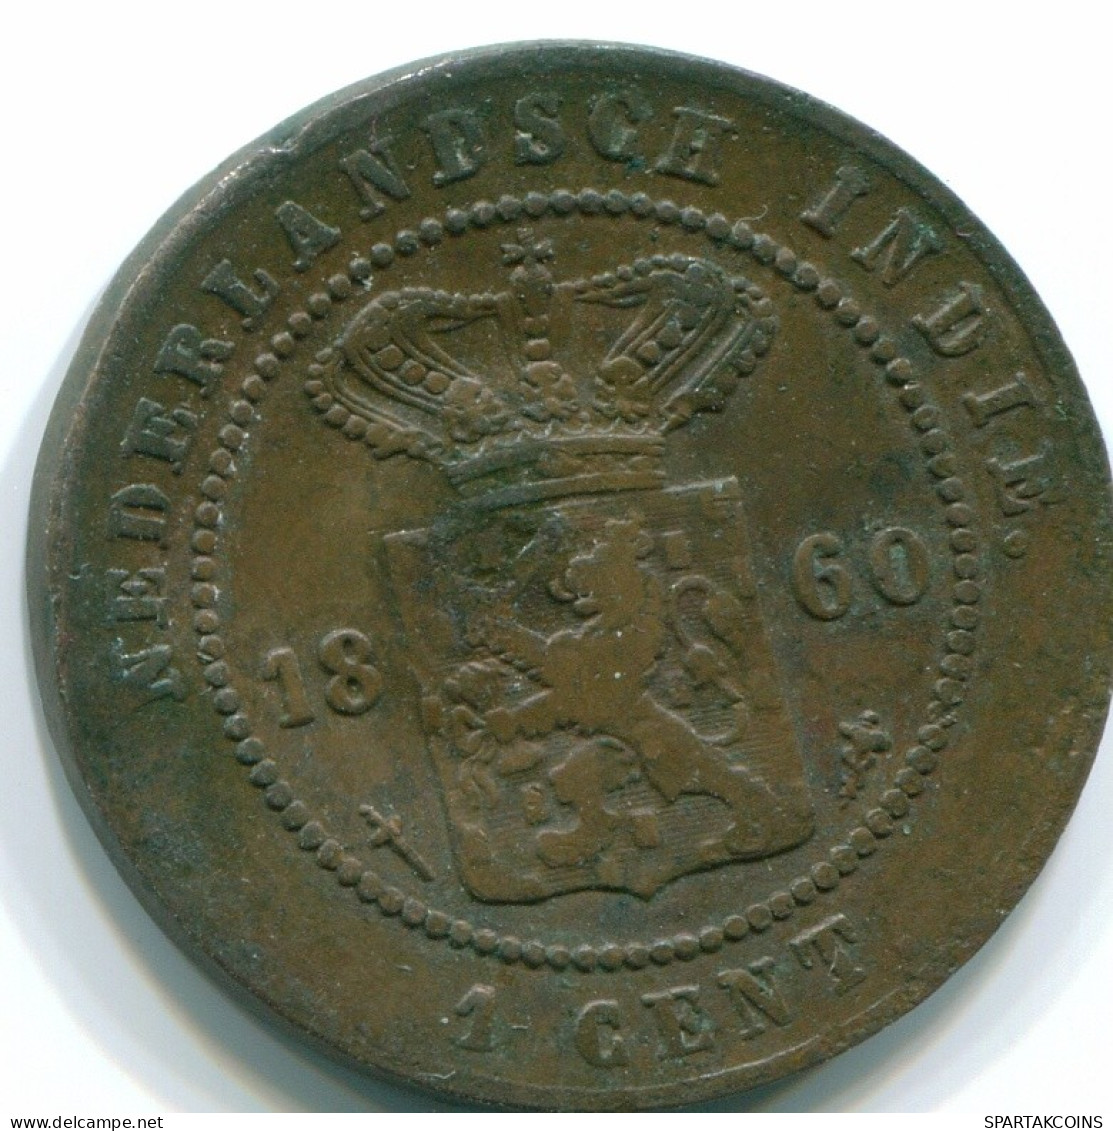 1/10 GULDEN 1869 NETHERLANDS EAST INDIES INDONESIA Copper Colonial Coin #S10056.U.A - Niederländisch-Indien